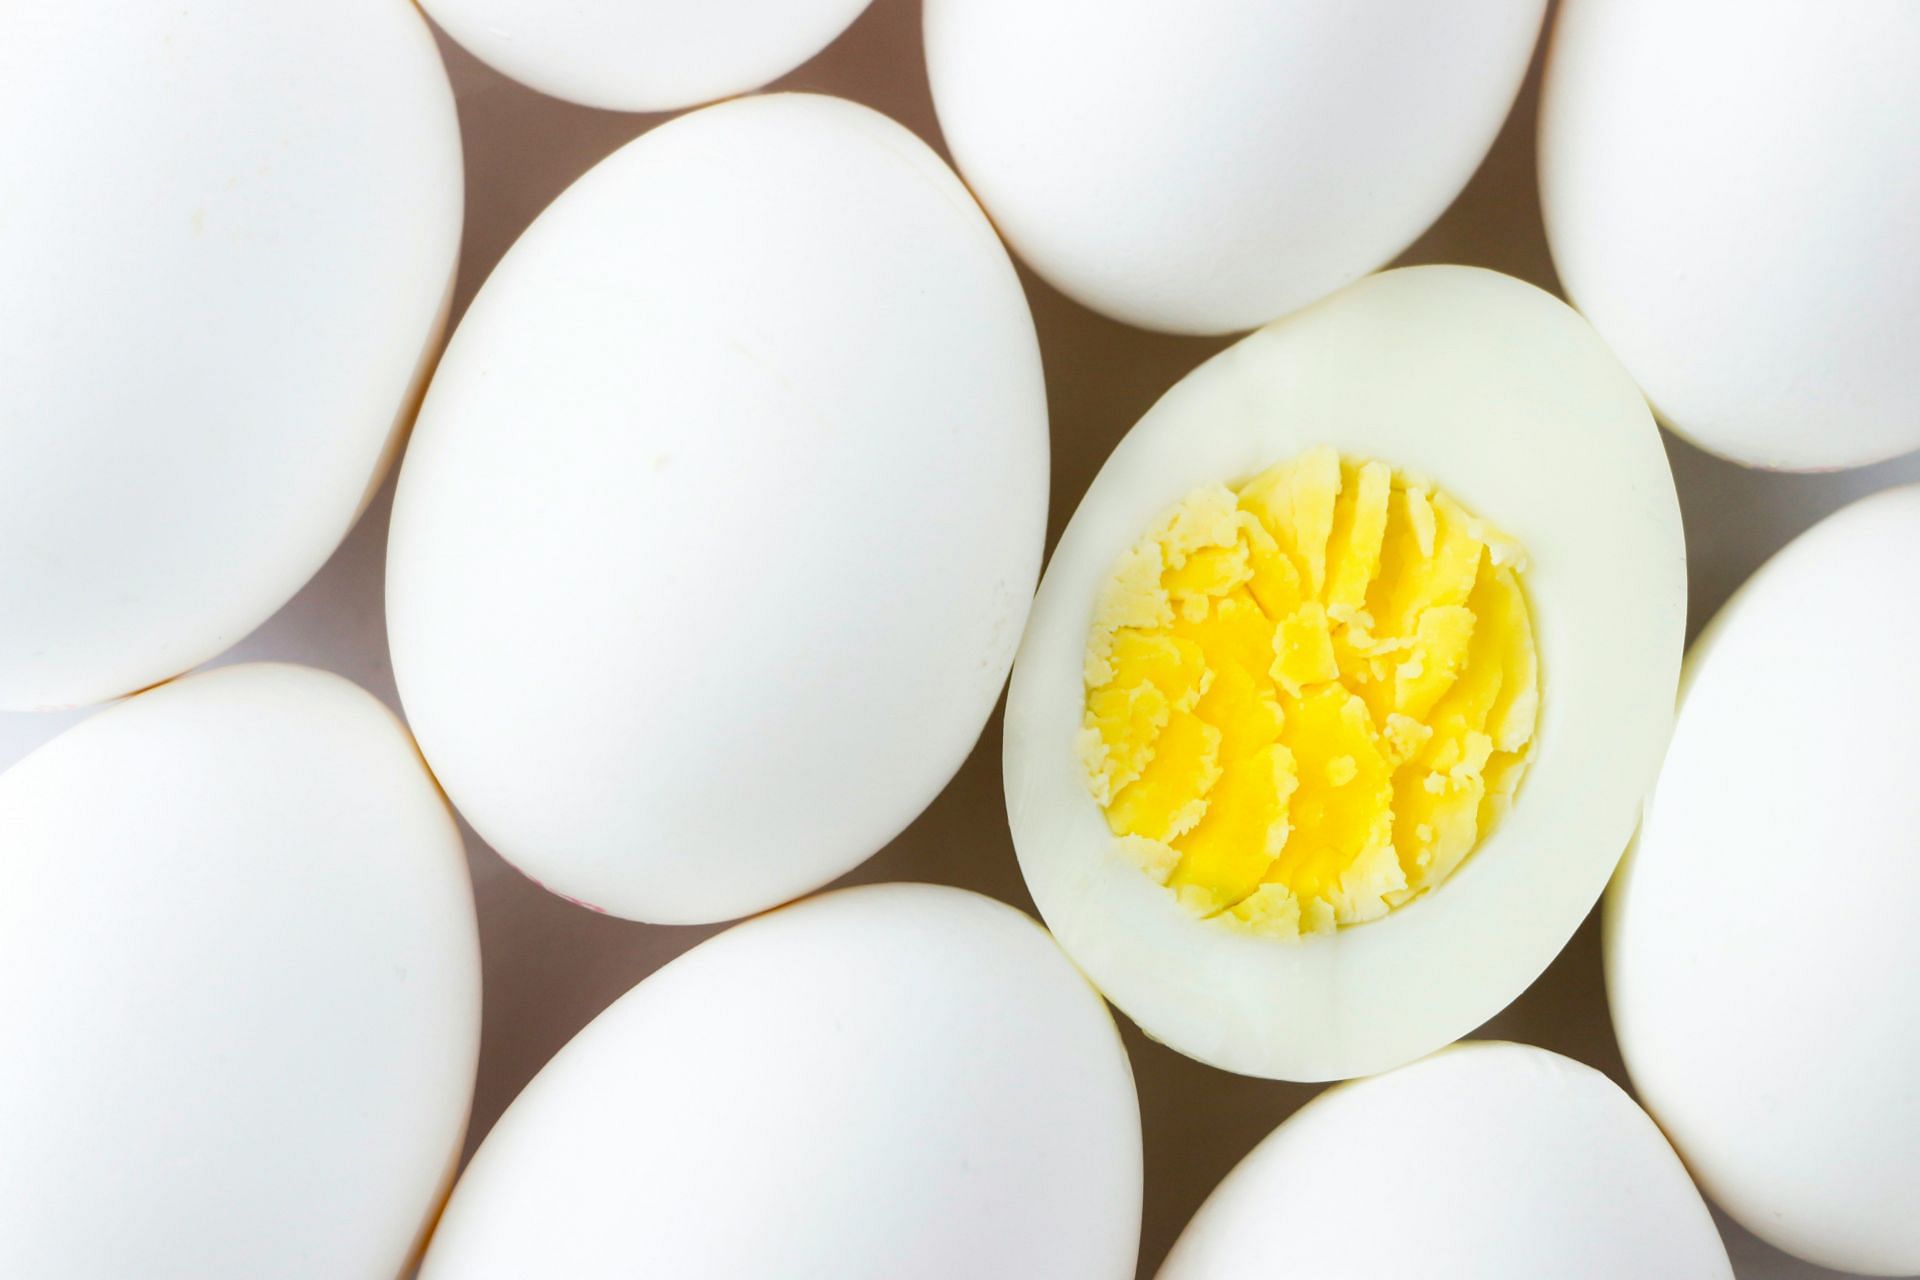 Egg whites come under collagen-rich foods (Image by Mustafa Bashari/Unsplash)